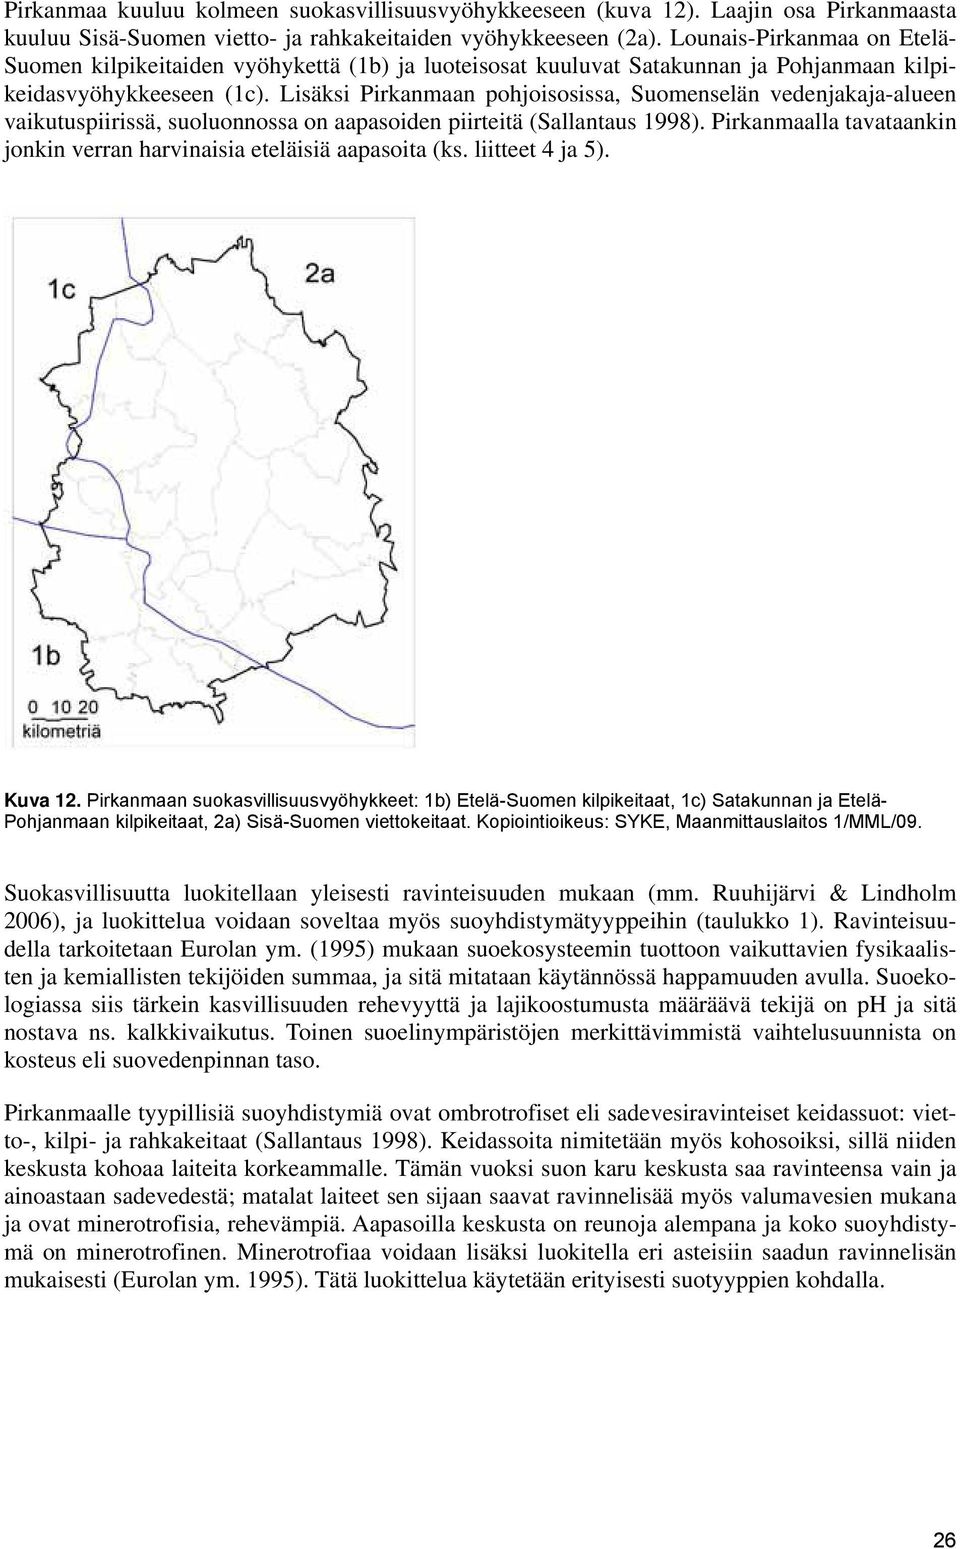 Lisäksi pohjoisosissa, Suomenselän vedenjakaja-alueen vaikutuspiirissä, suoluonnossa on aapasoiden piirteitä (Sallantaus 1998).